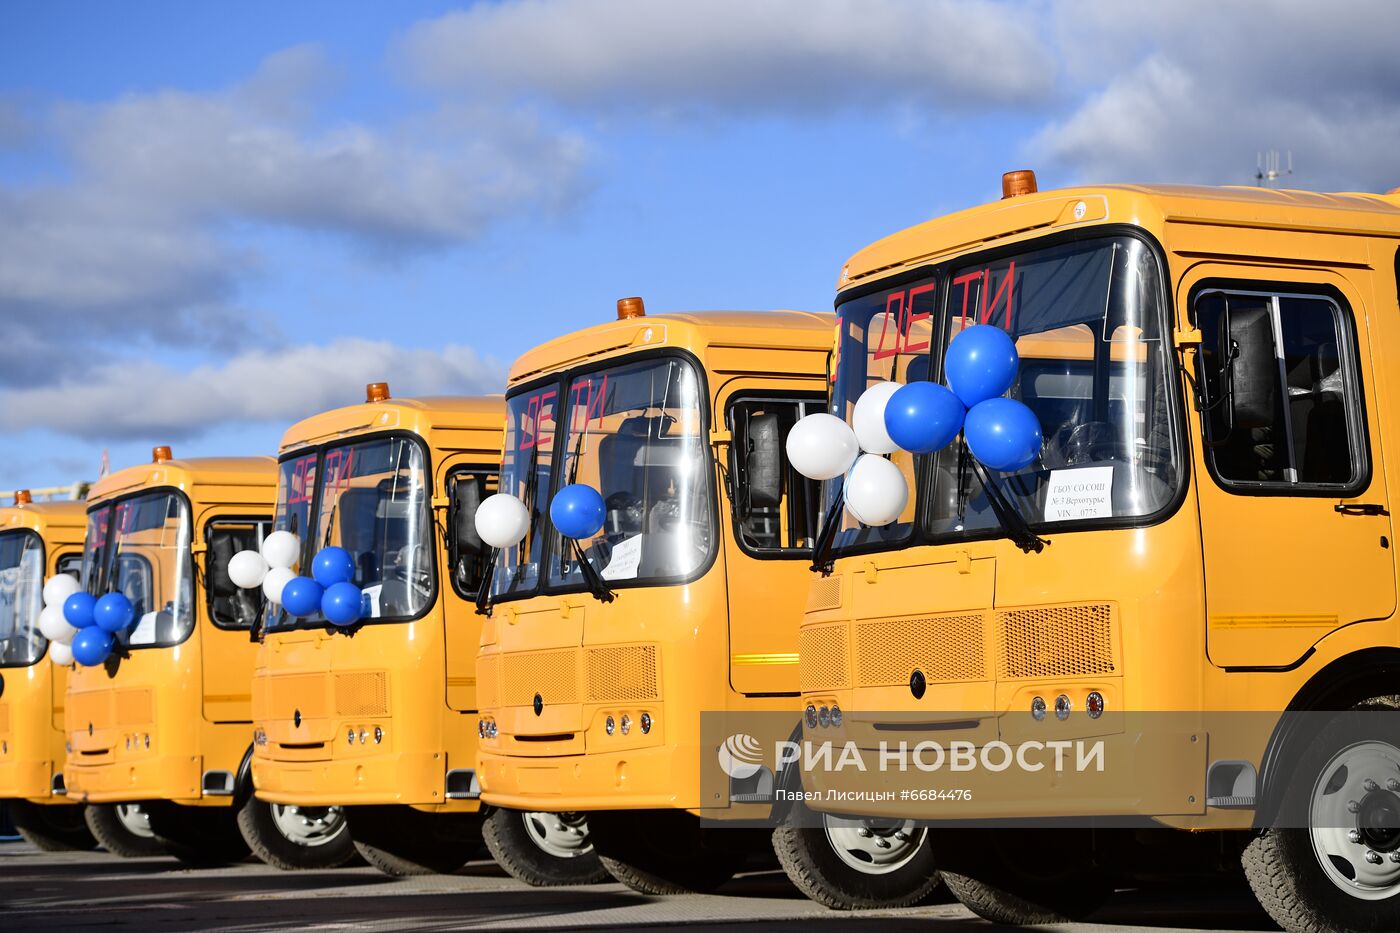 Передача школьных автобусов правительством Екатеринбурга муниципалитетам Свердловской области